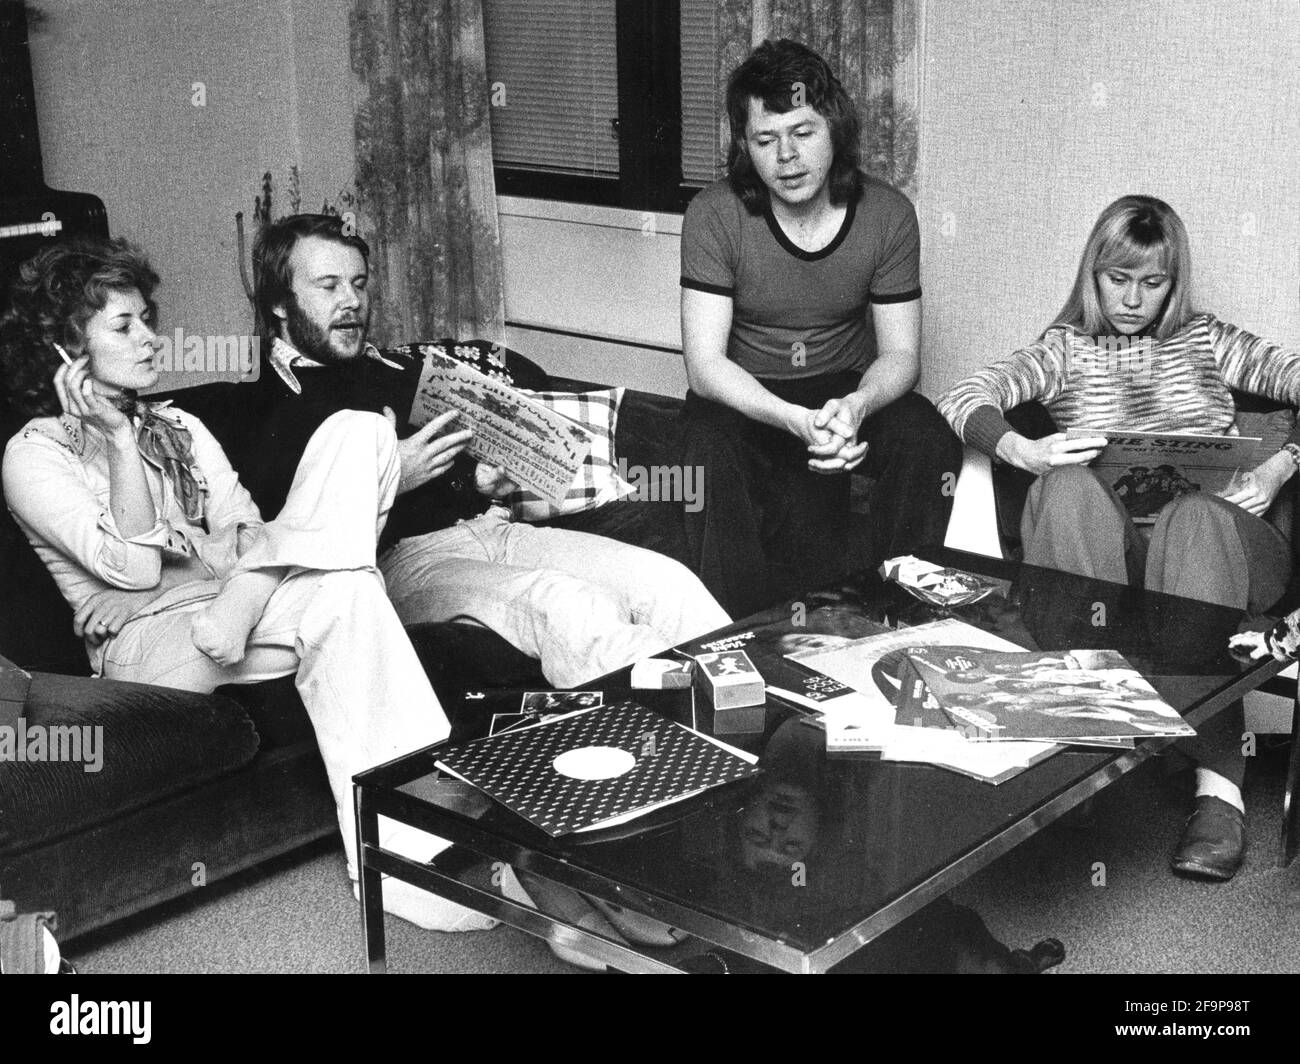 Anni-Frid Lyngstad, Benny Andersson sitzt auf einem Sofa, raucht und hört Schallplatten in Bjorn Ulvaeus und Agnetha Faltskogs Wohnung in Stockholm, Schweden, 27. März 1974. Foto: Jonny Graan / Expressen / TT / Code 16 Stockfoto